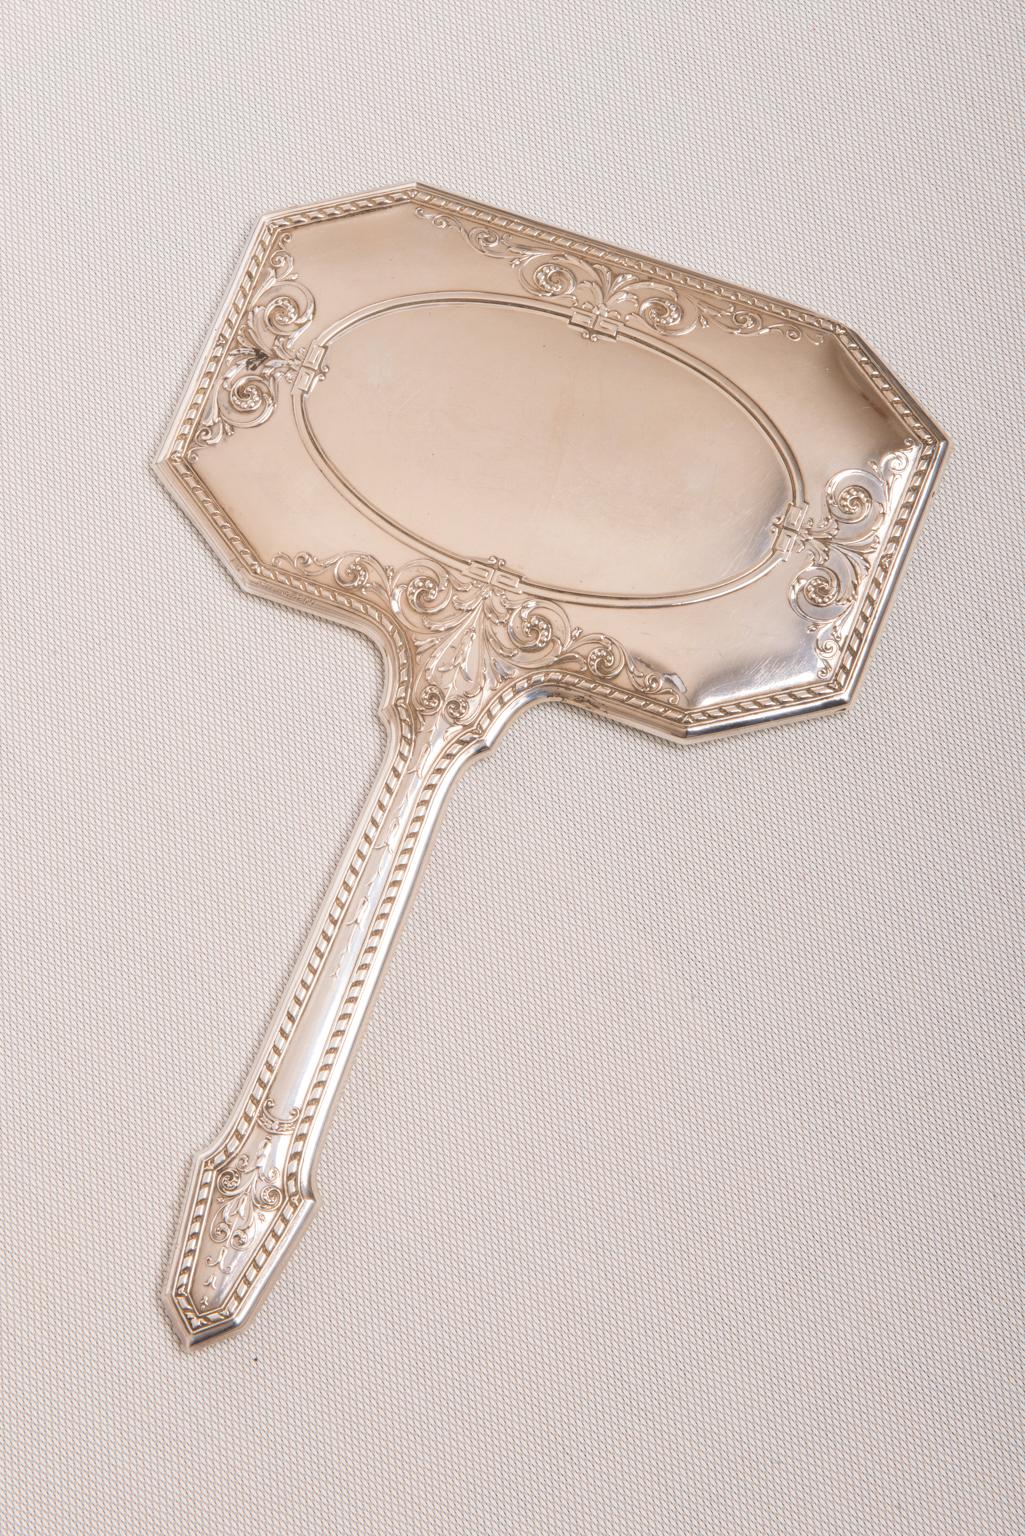 Ungewöhnlicher Spiegel aus Sterlingsilber mit Griff, elegant und praktisch.
Gibt es ein besseres Geschenk für eine Frau?
